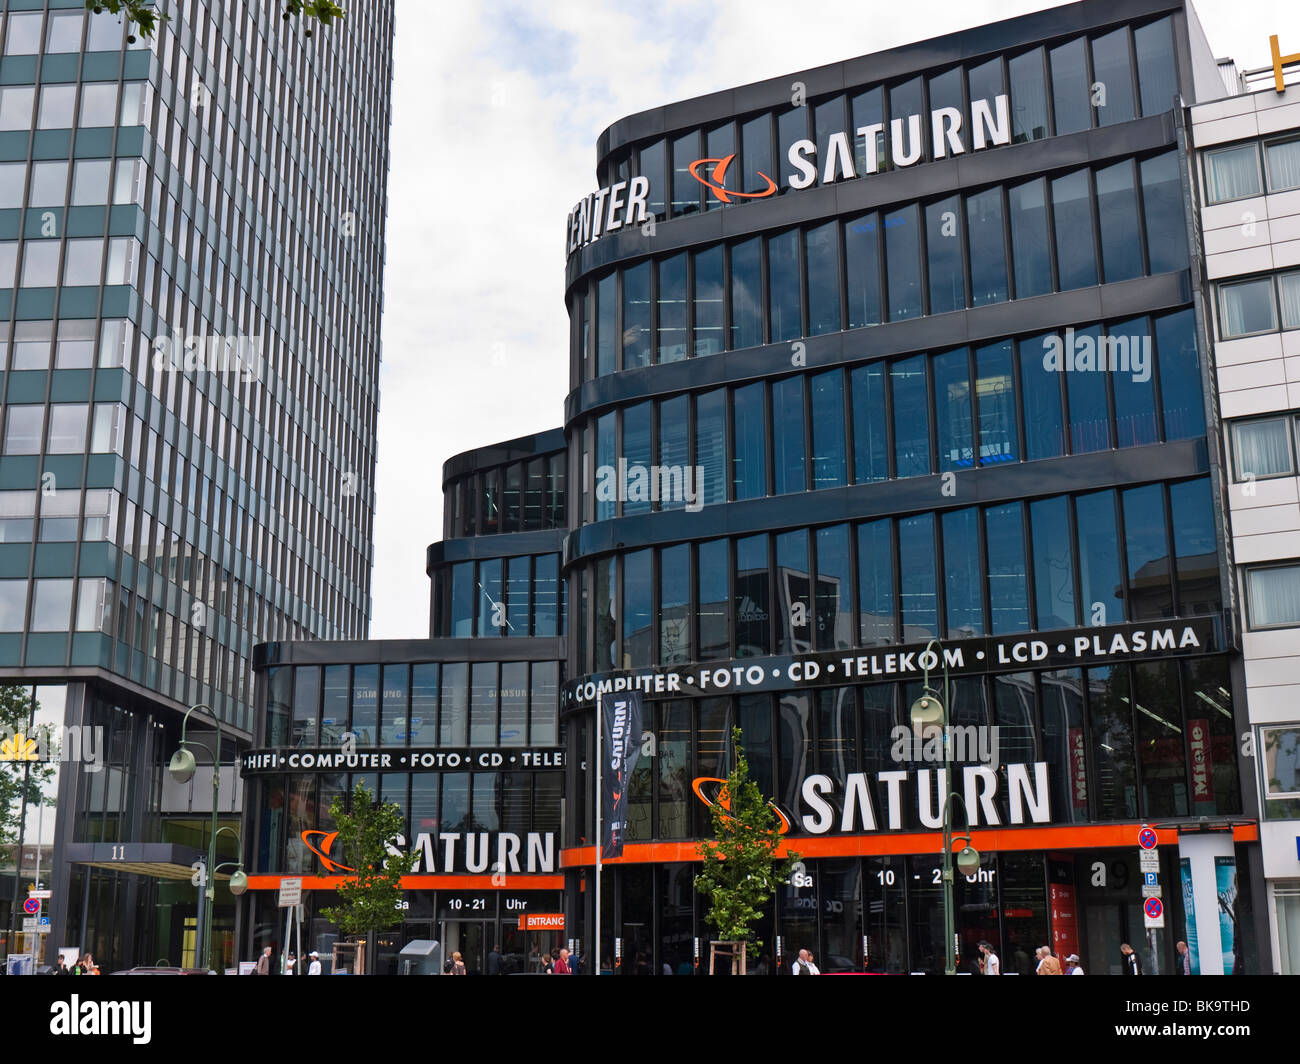 Saturno enorme tienda de electrodomésticos y productos electrónicos en el  Europa Center, Tauentzienstrasse, Berlín, Alemania Fotografía de stock -  Alamy